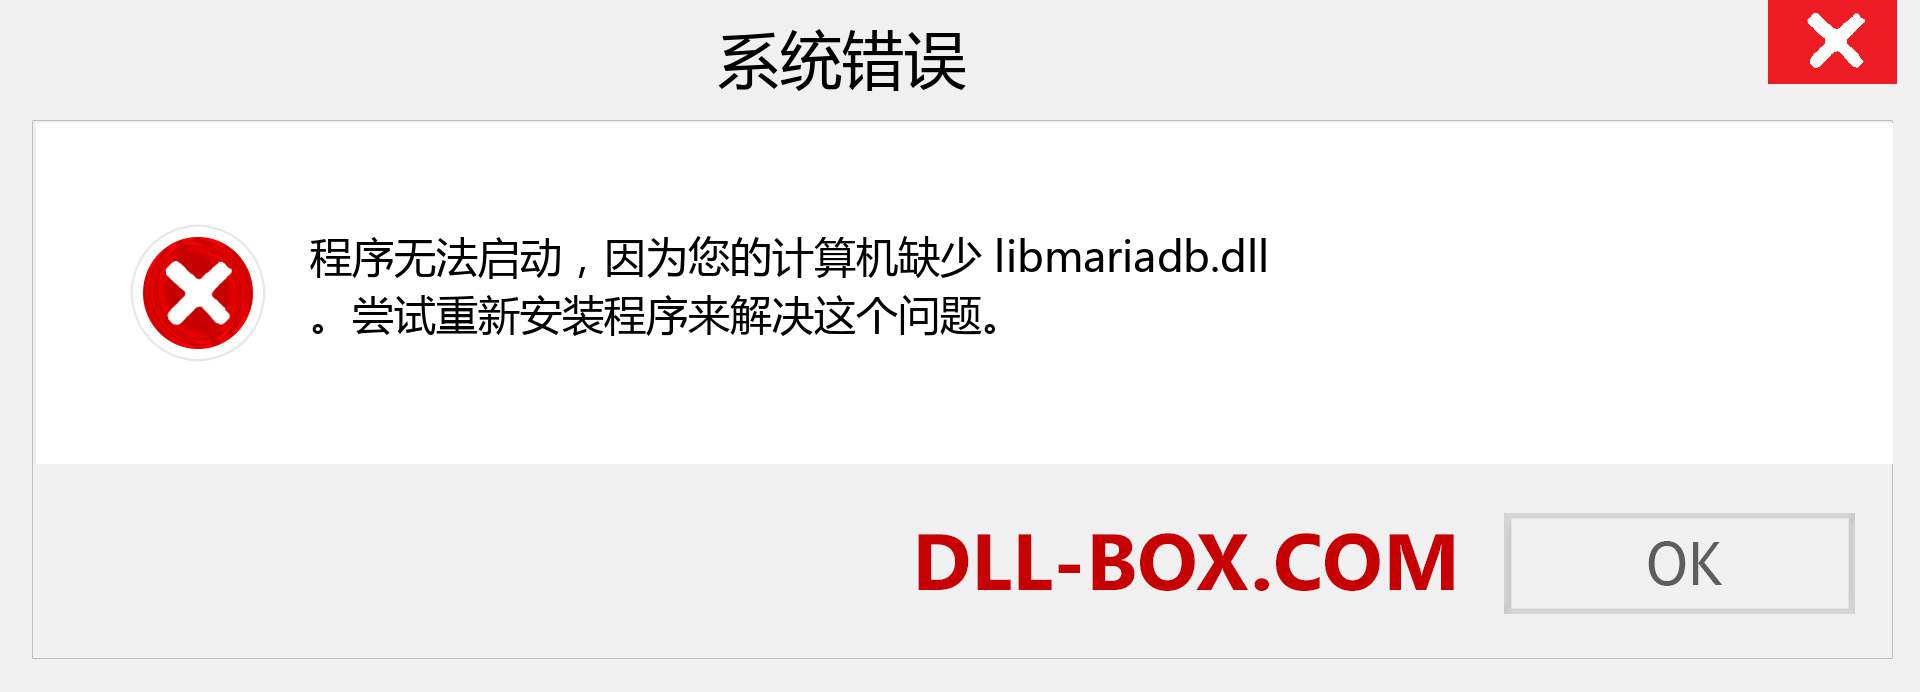 libmariadb.dll 文件丢失？。 适用于 Windows 7、8、10 的下载 - 修复 Windows、照片、图像上的 libmariadb dll 丢失错误